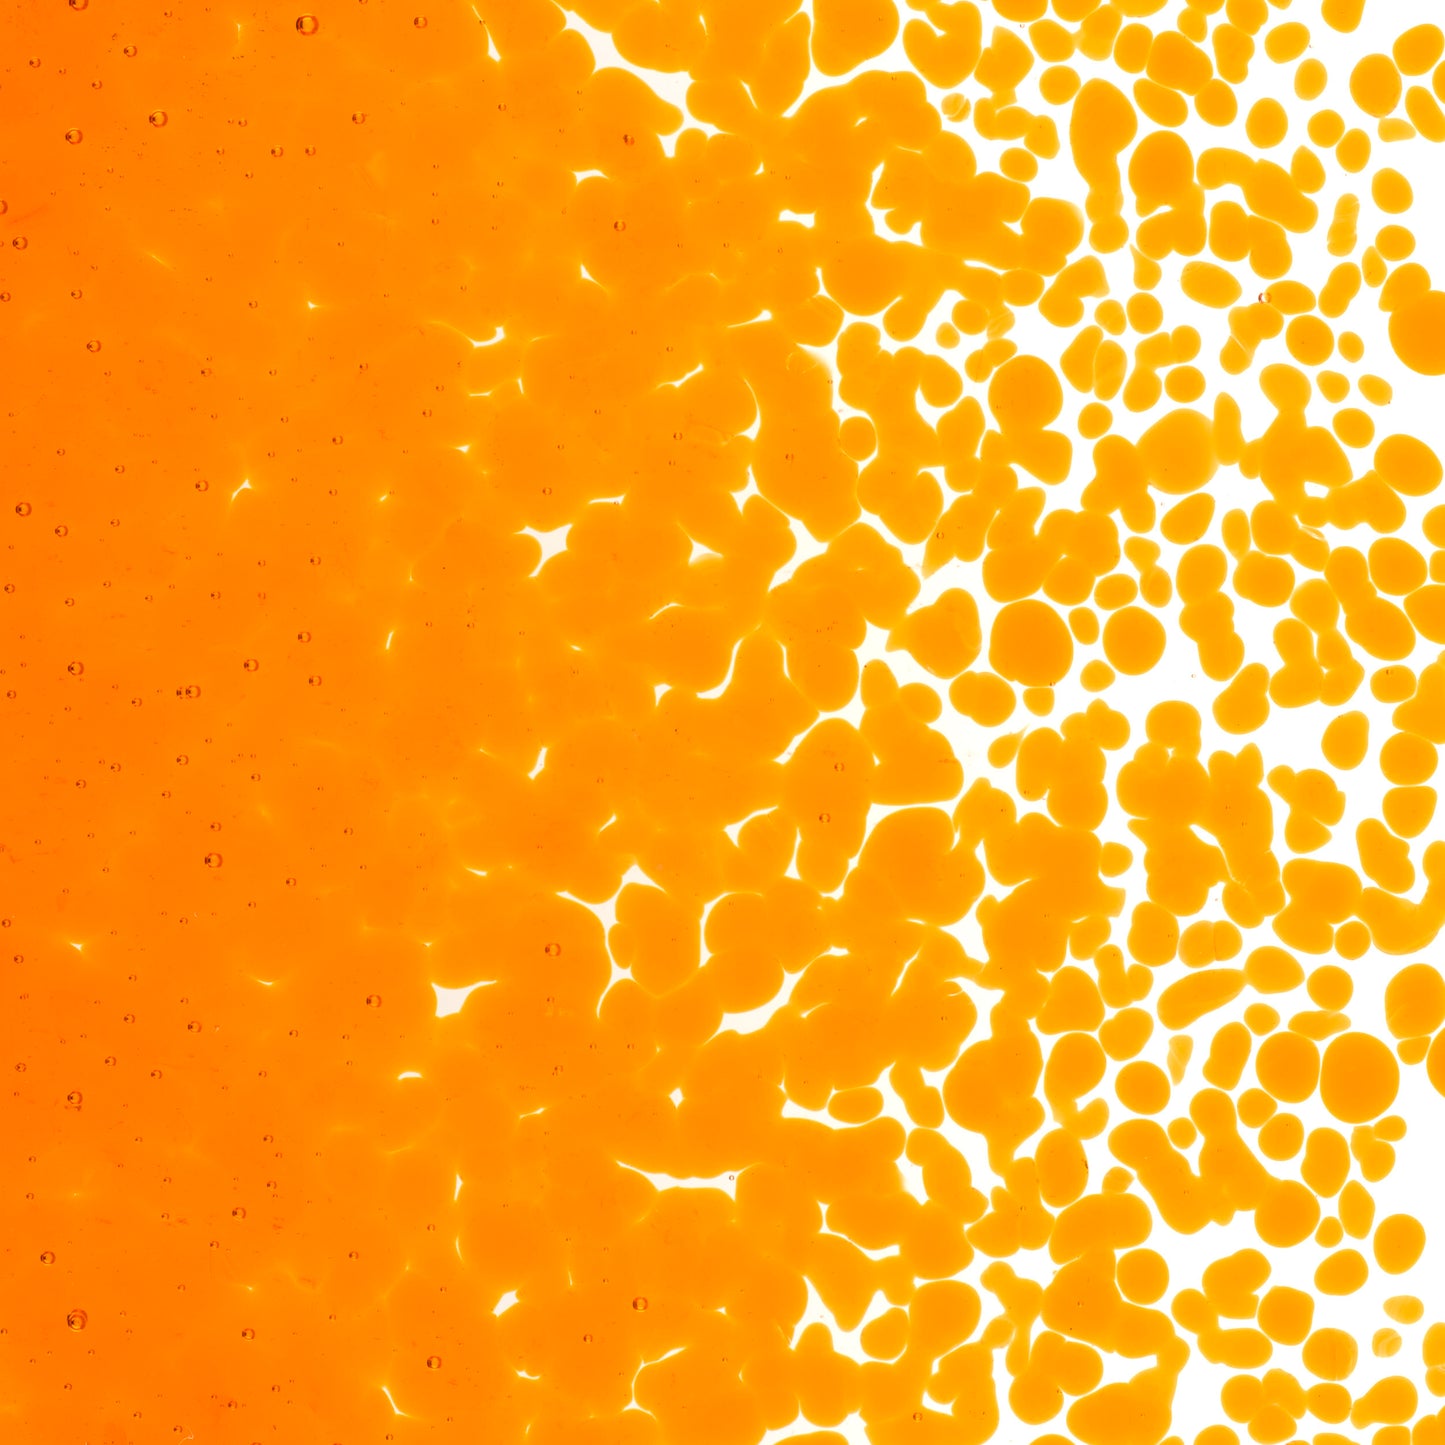 Light Orange Striker Transparent Frit (1025), Fusible, 5 oz. jar